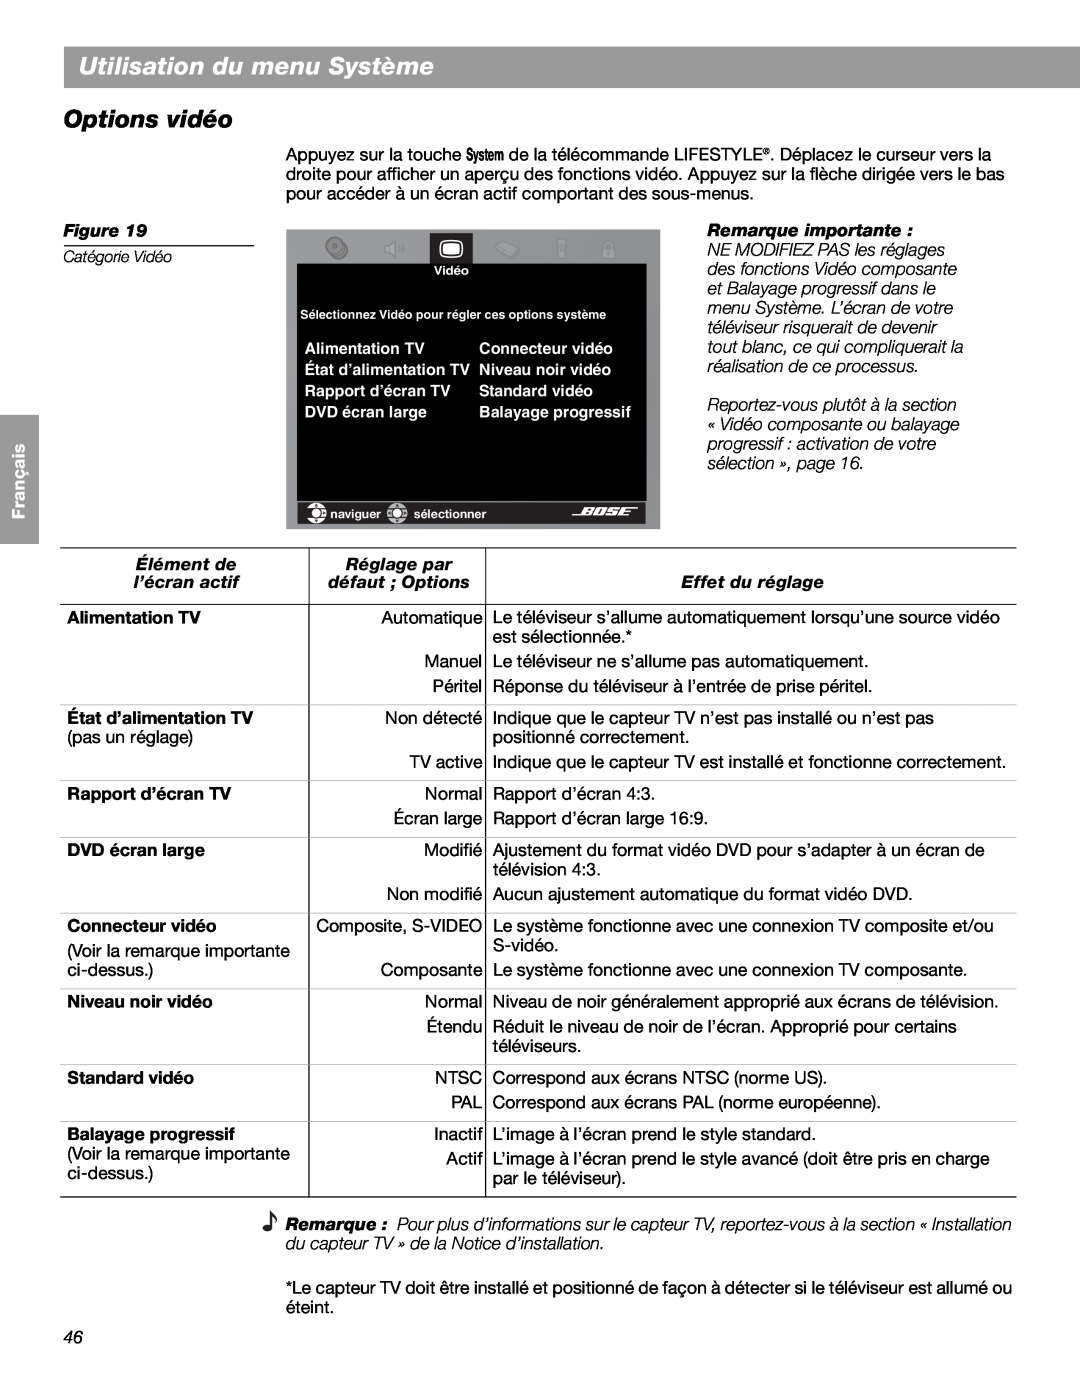 Bose LIFESTYLE 48 manual Options vidéo, Utilisation du menu Système, English, Español Français, Figure, Remarque importante 